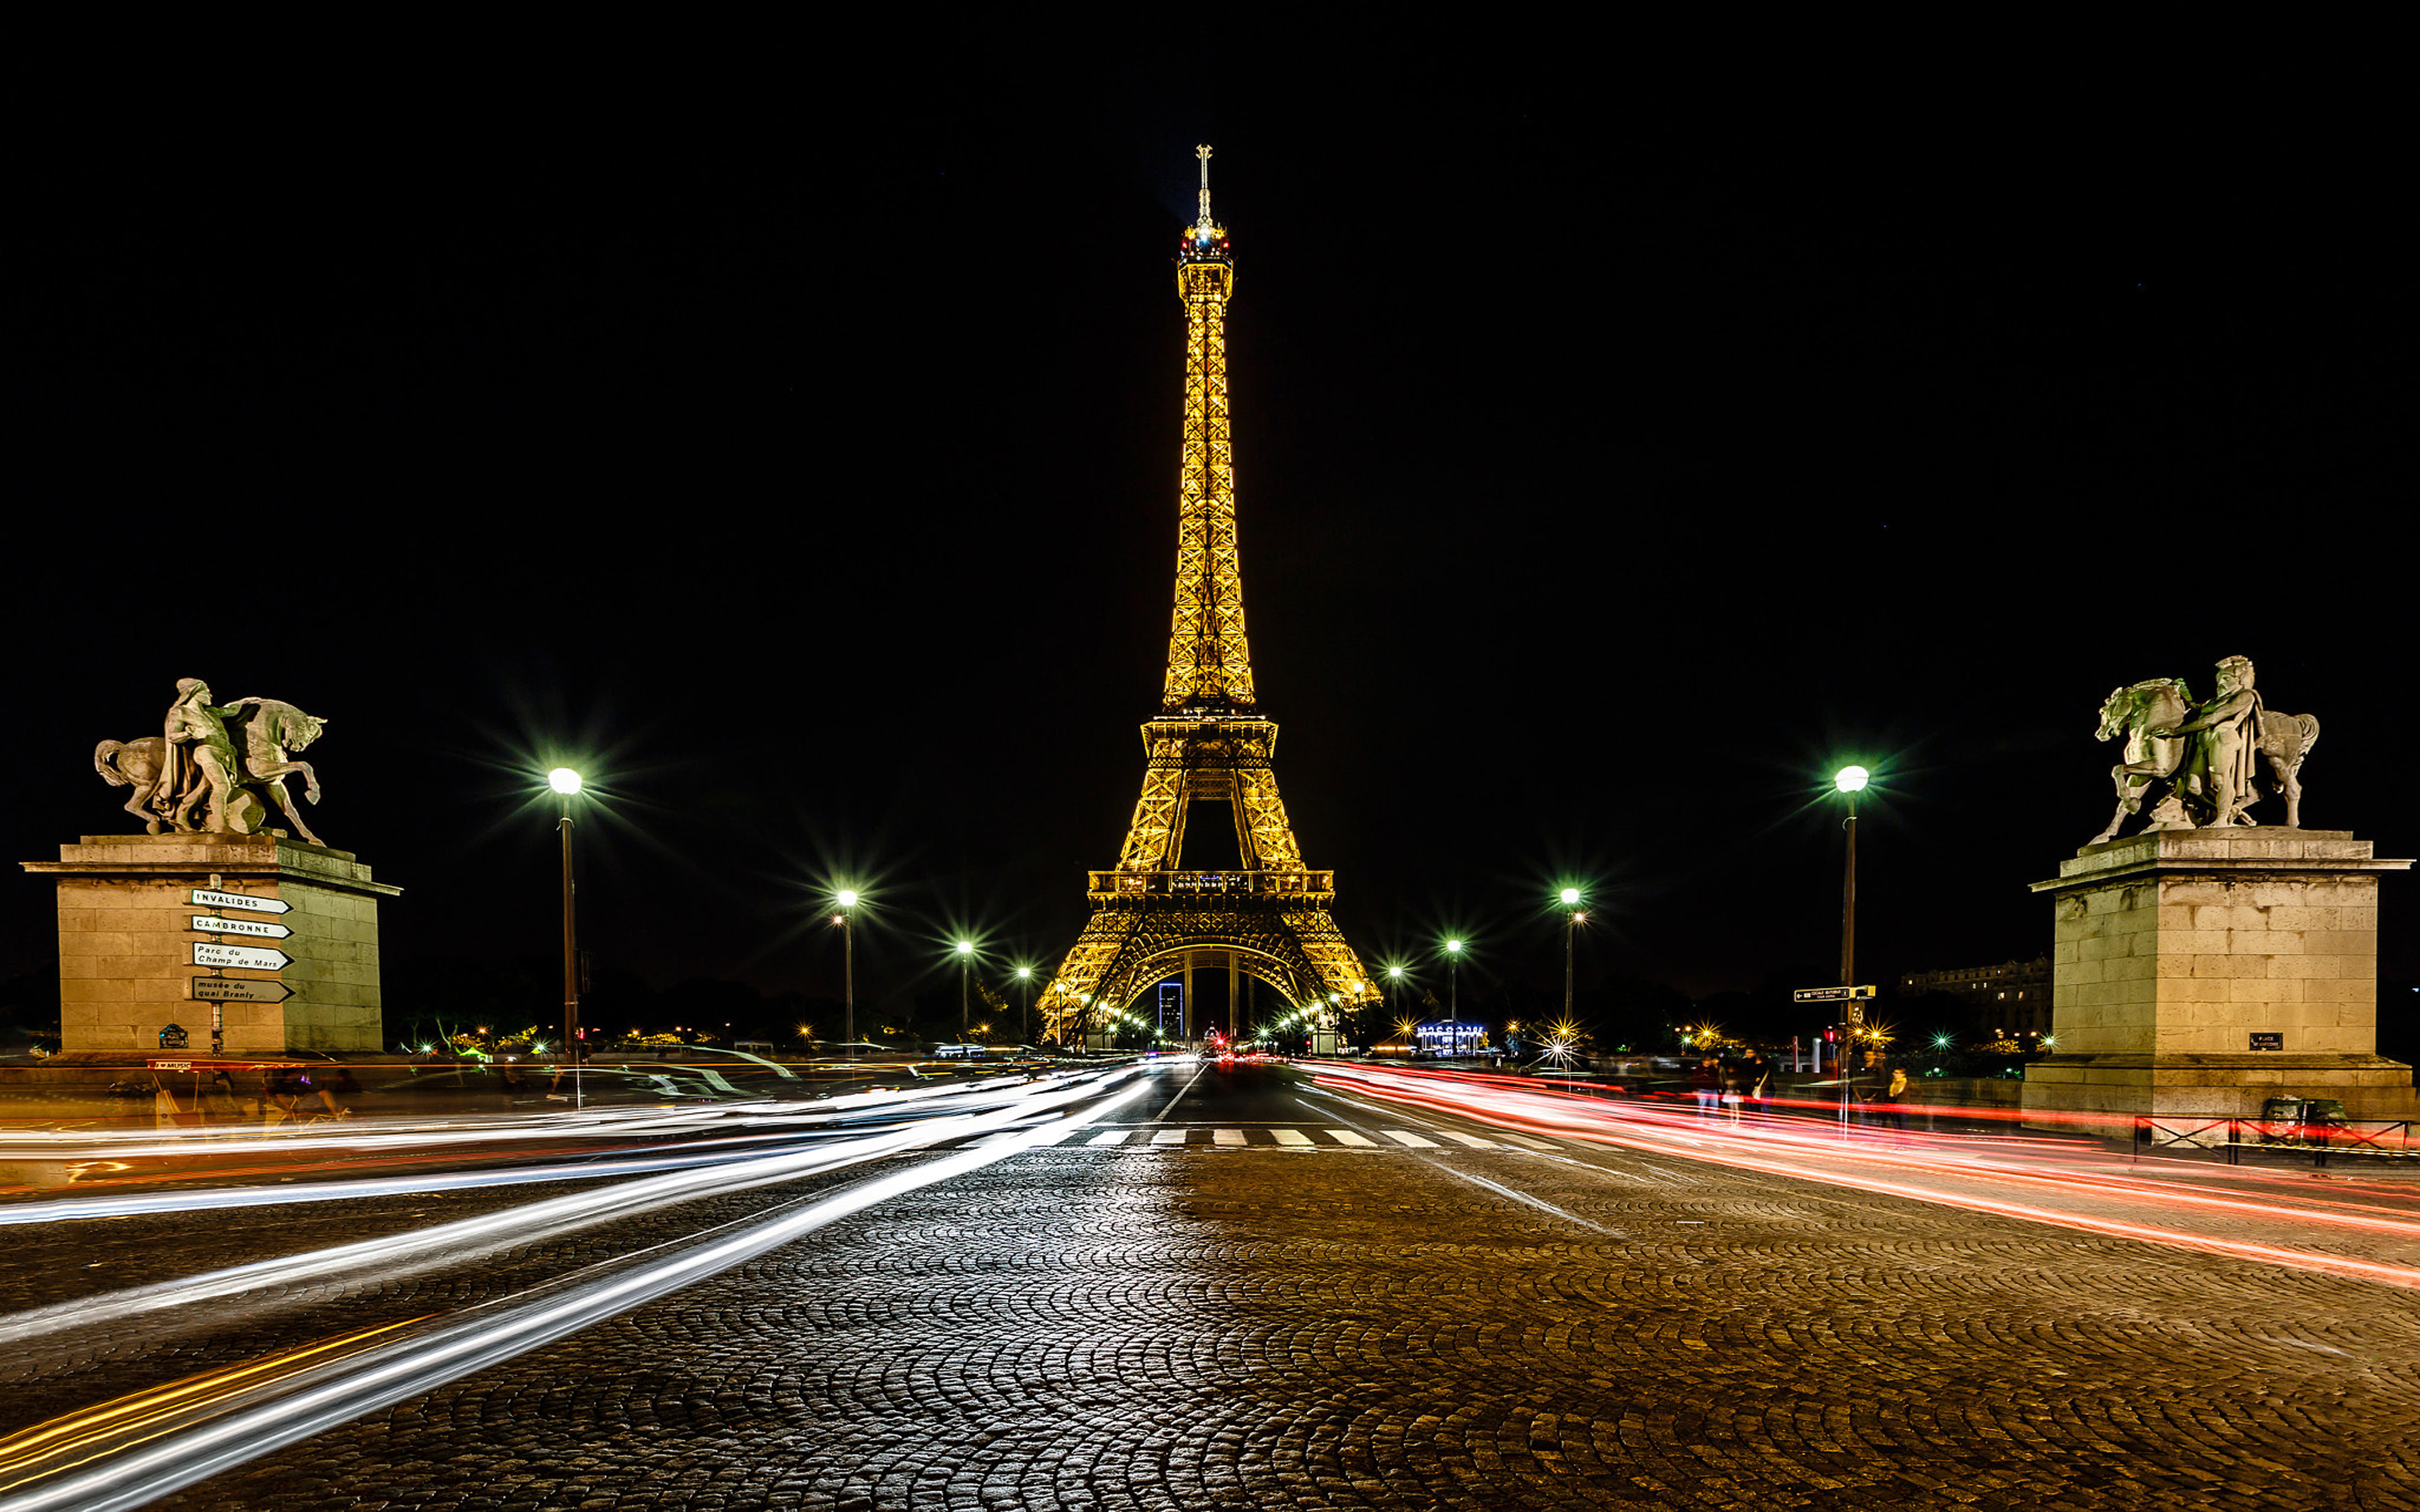 Total 138+ imagem paris background at night - Thcshoanghoatham-badinh ...